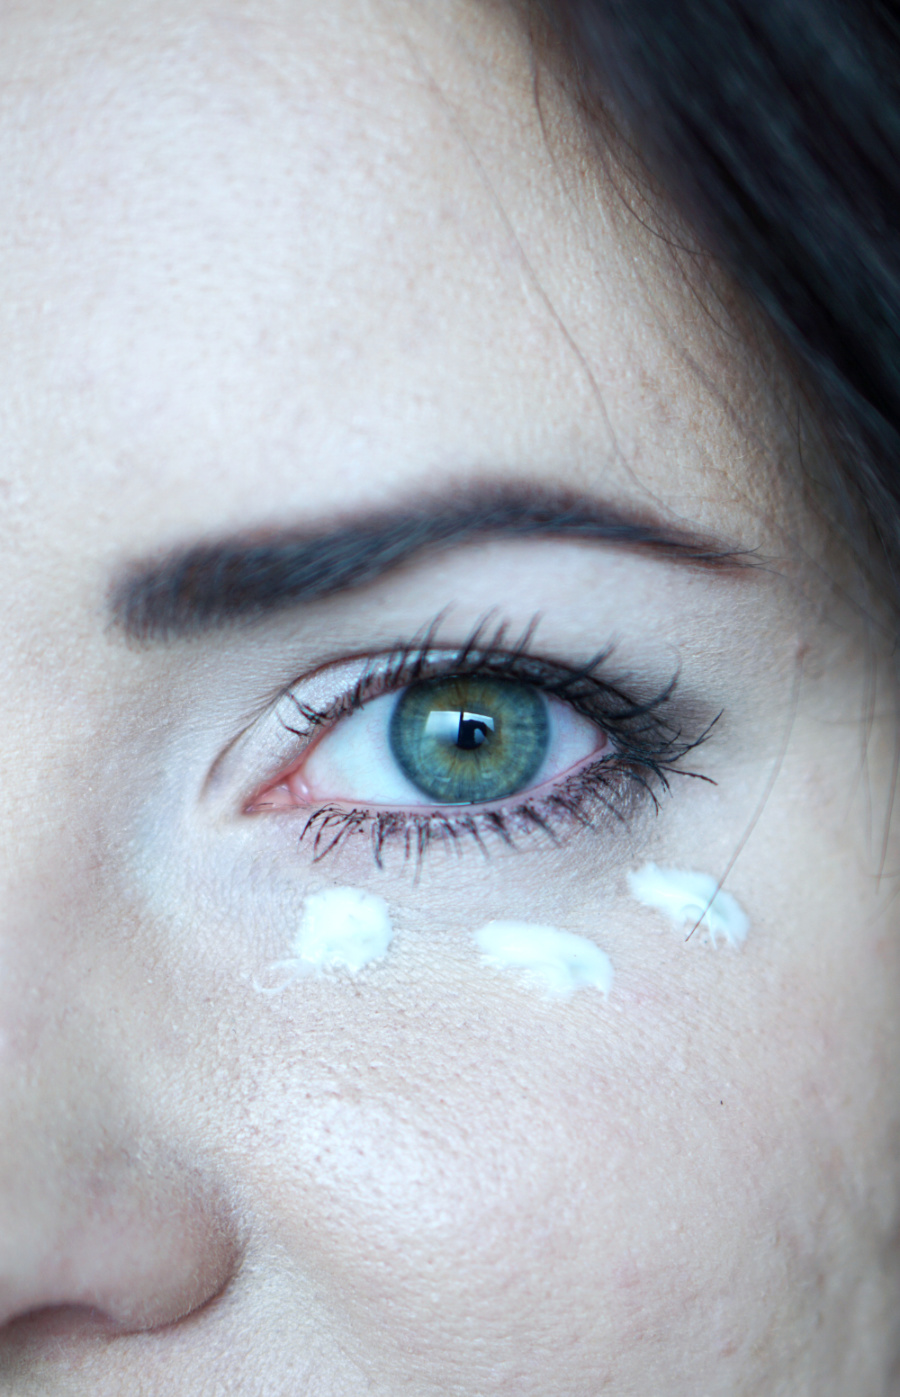 Pielęgnacja skóry wokół oczu - co zrobić, by oczy nie zdradzały błędów w pielęgnacji, nieprzespanych nocy oraz wieku?